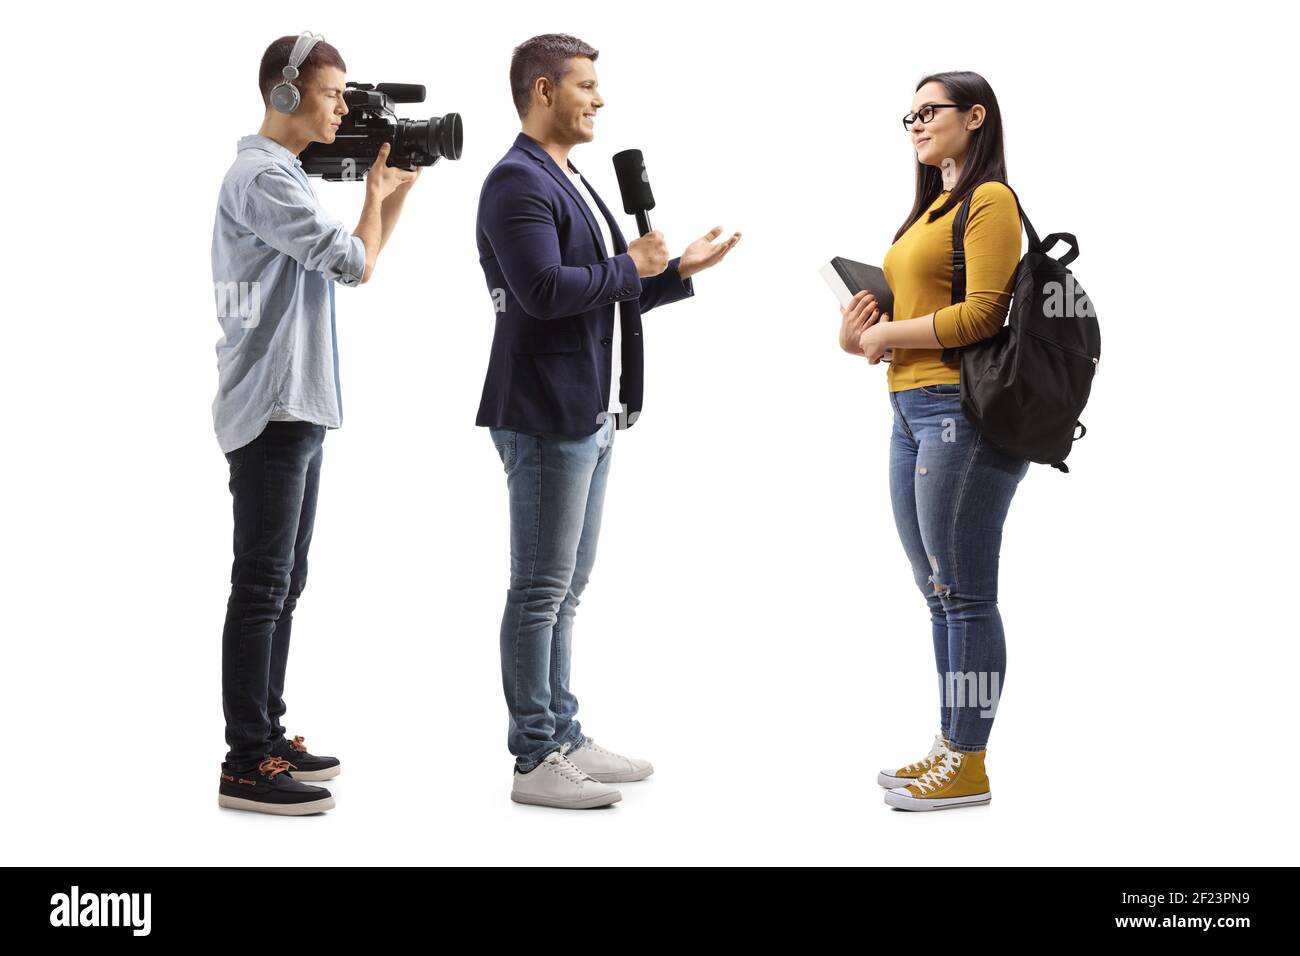 In voller Länge Profilaufnahme eines Reporters, der eine Frau interviewte Schüler- und Kameramann-Aufnahmen isoliert auf weißem Hintergrund Stockfoto